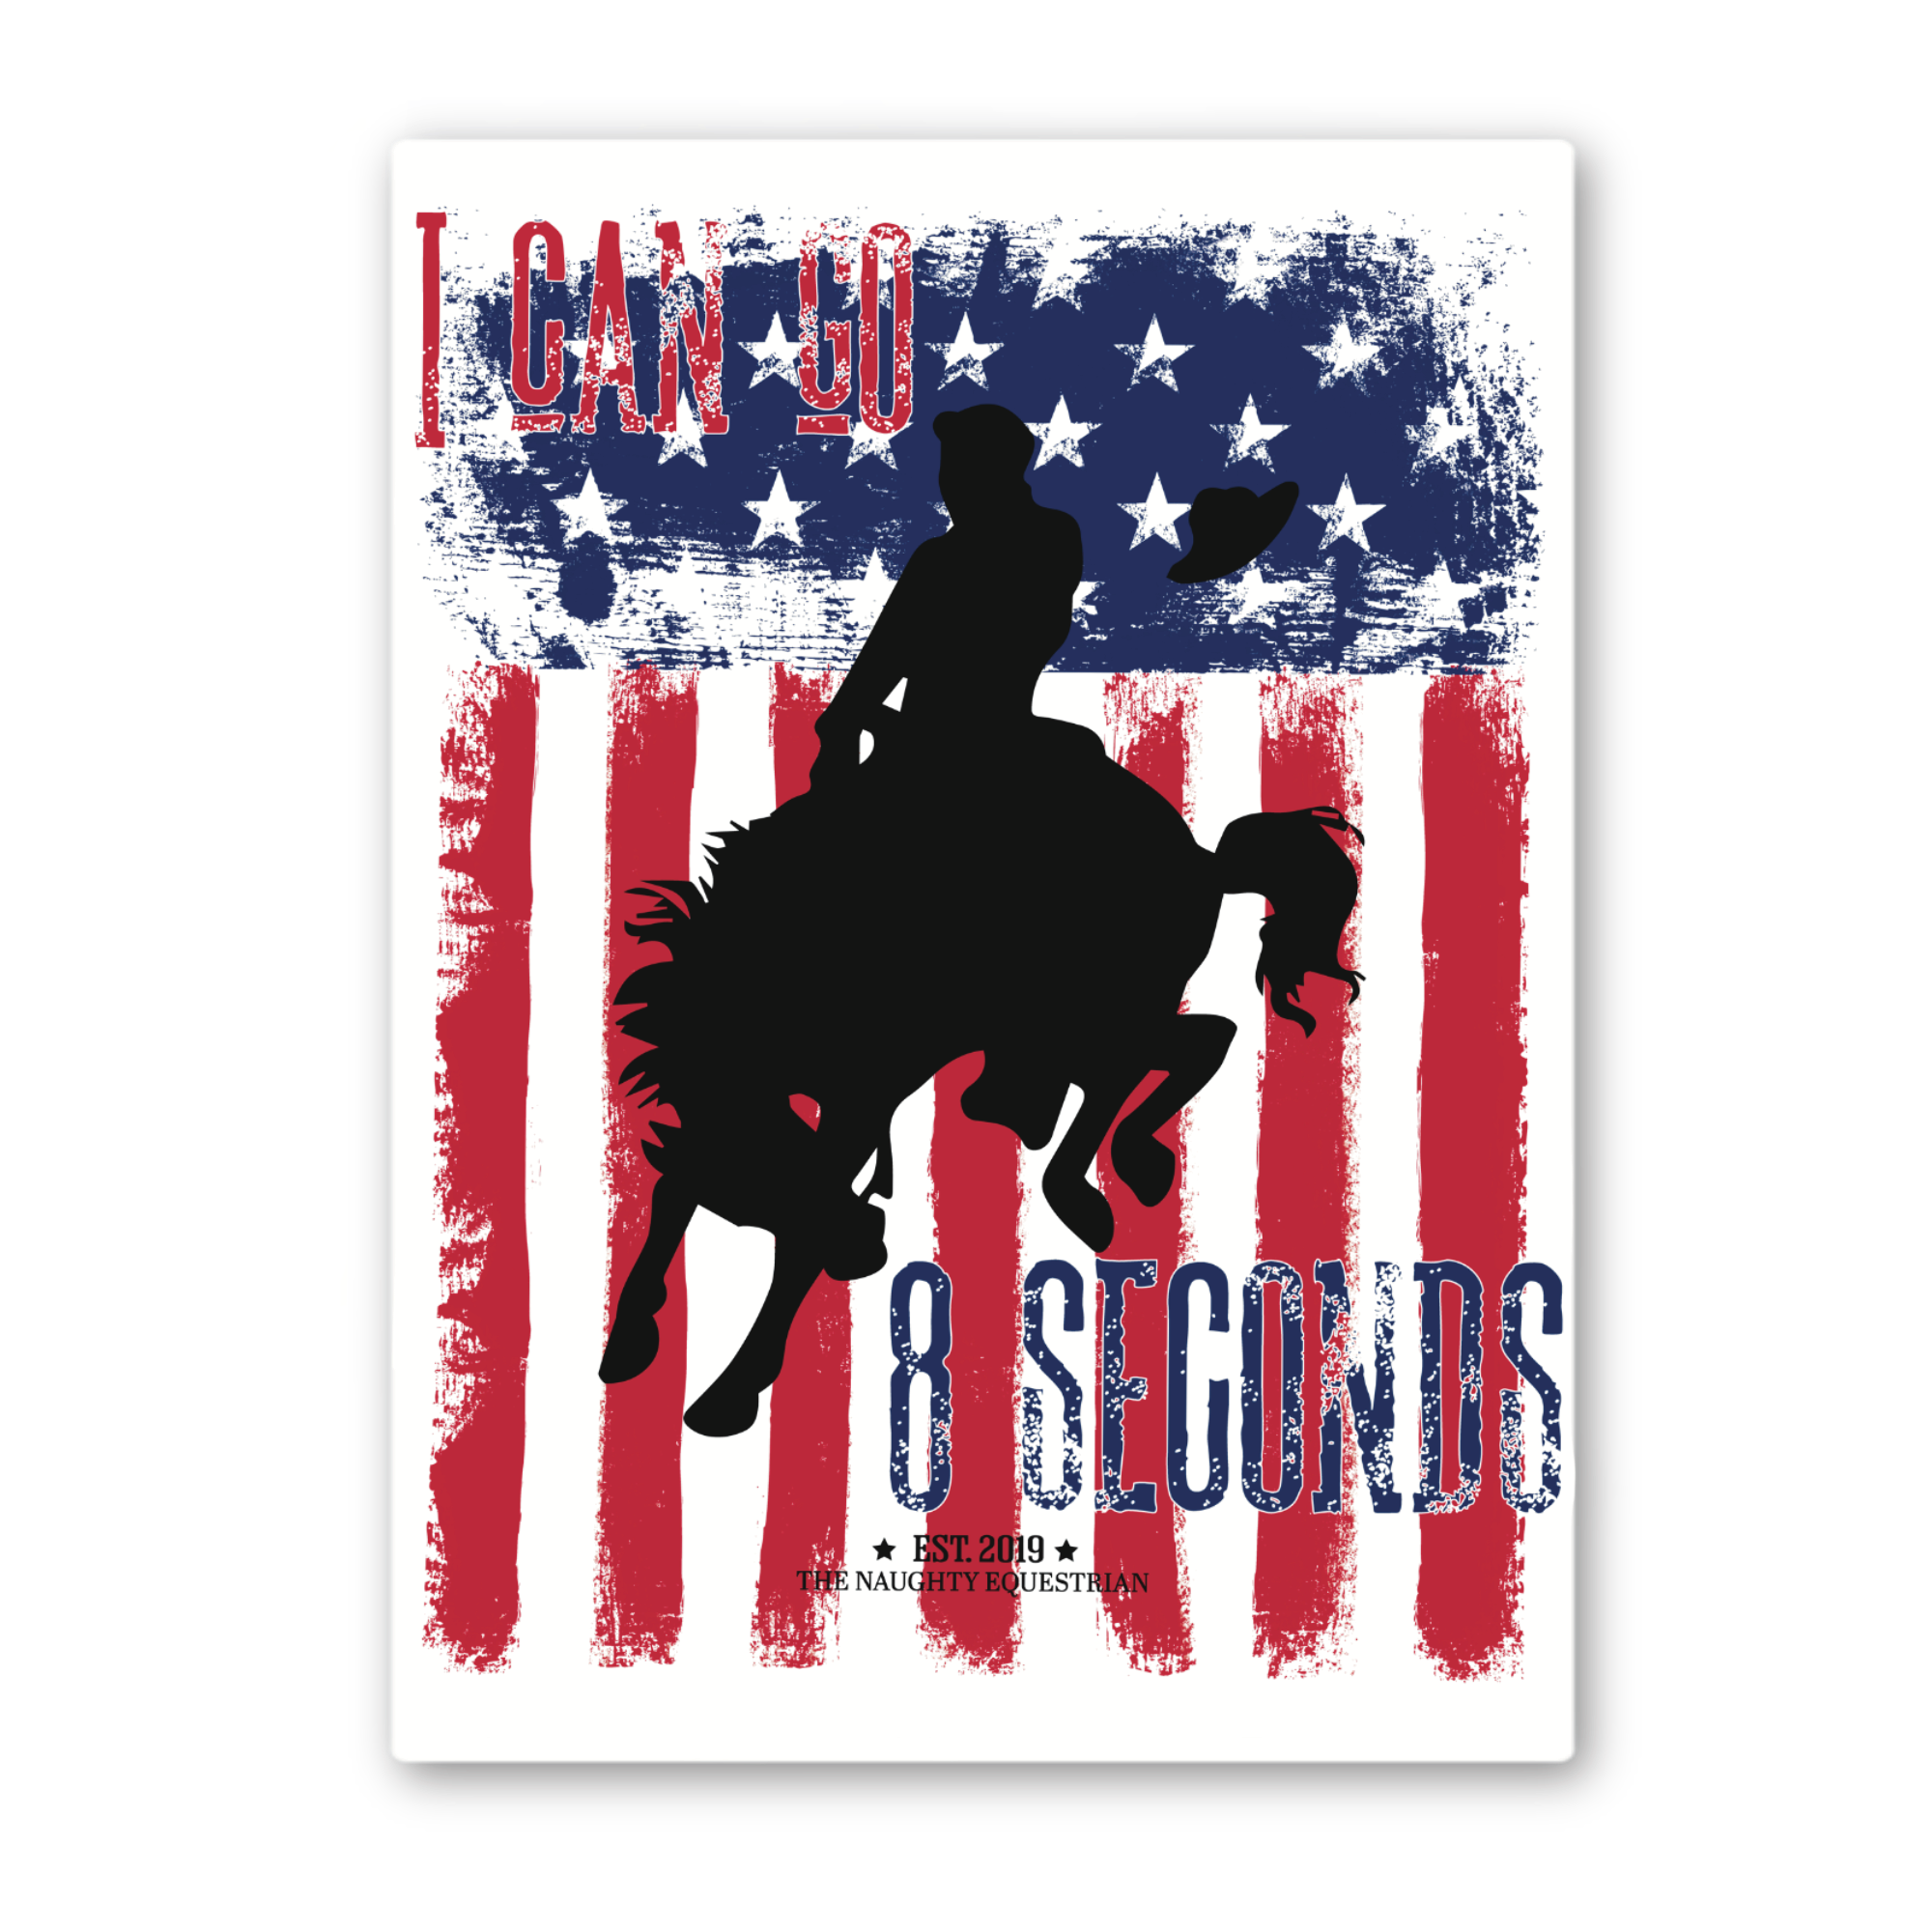 Cowboy I Can Go 8 Seconds Sticker, Vinyl Car Decal